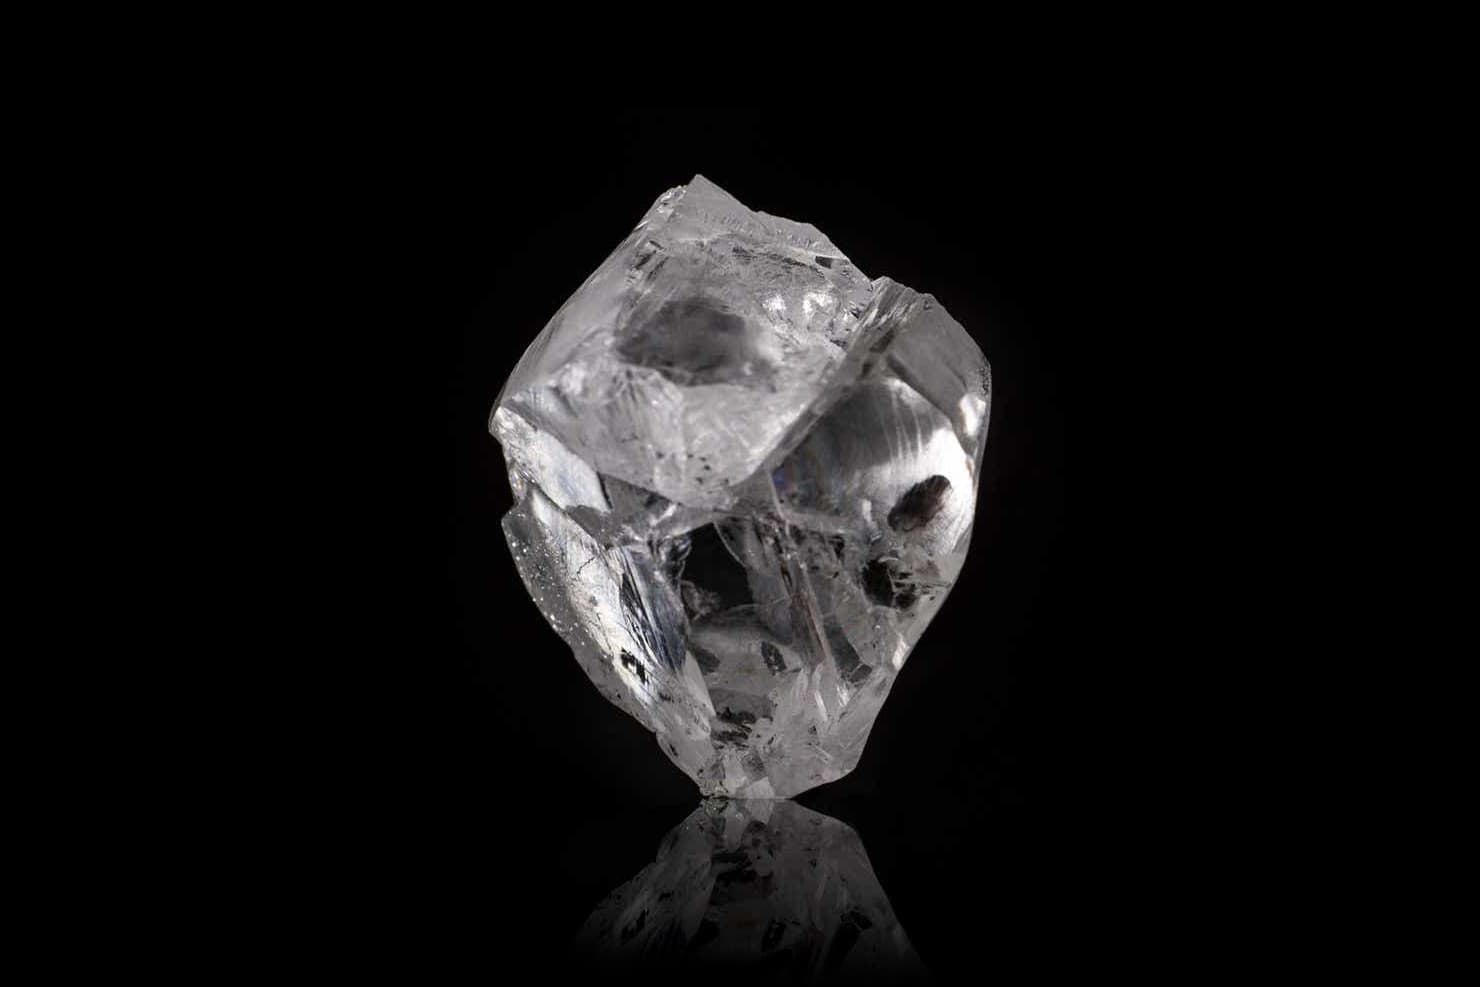 Maiores diamantes descobertos neste século